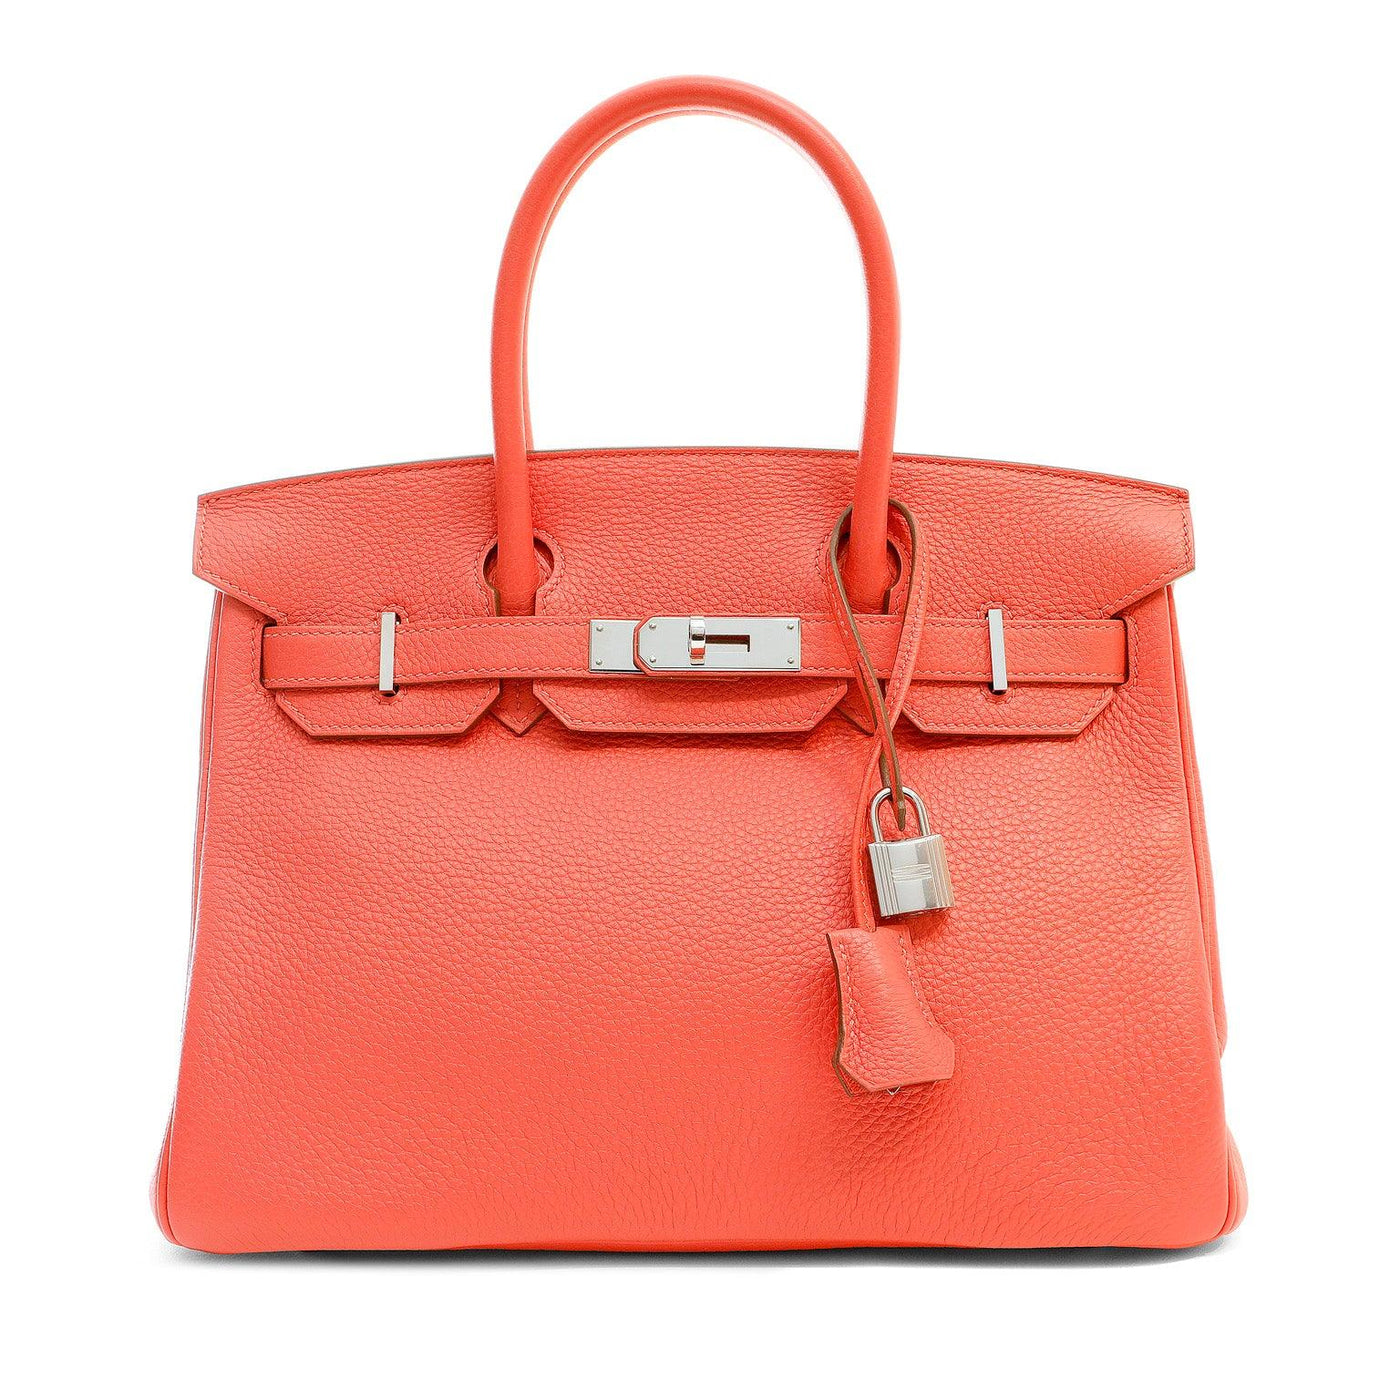 Hermès 30cm Rose Orange Togo Birkin w/ Palladium Hardware - Only Authentics